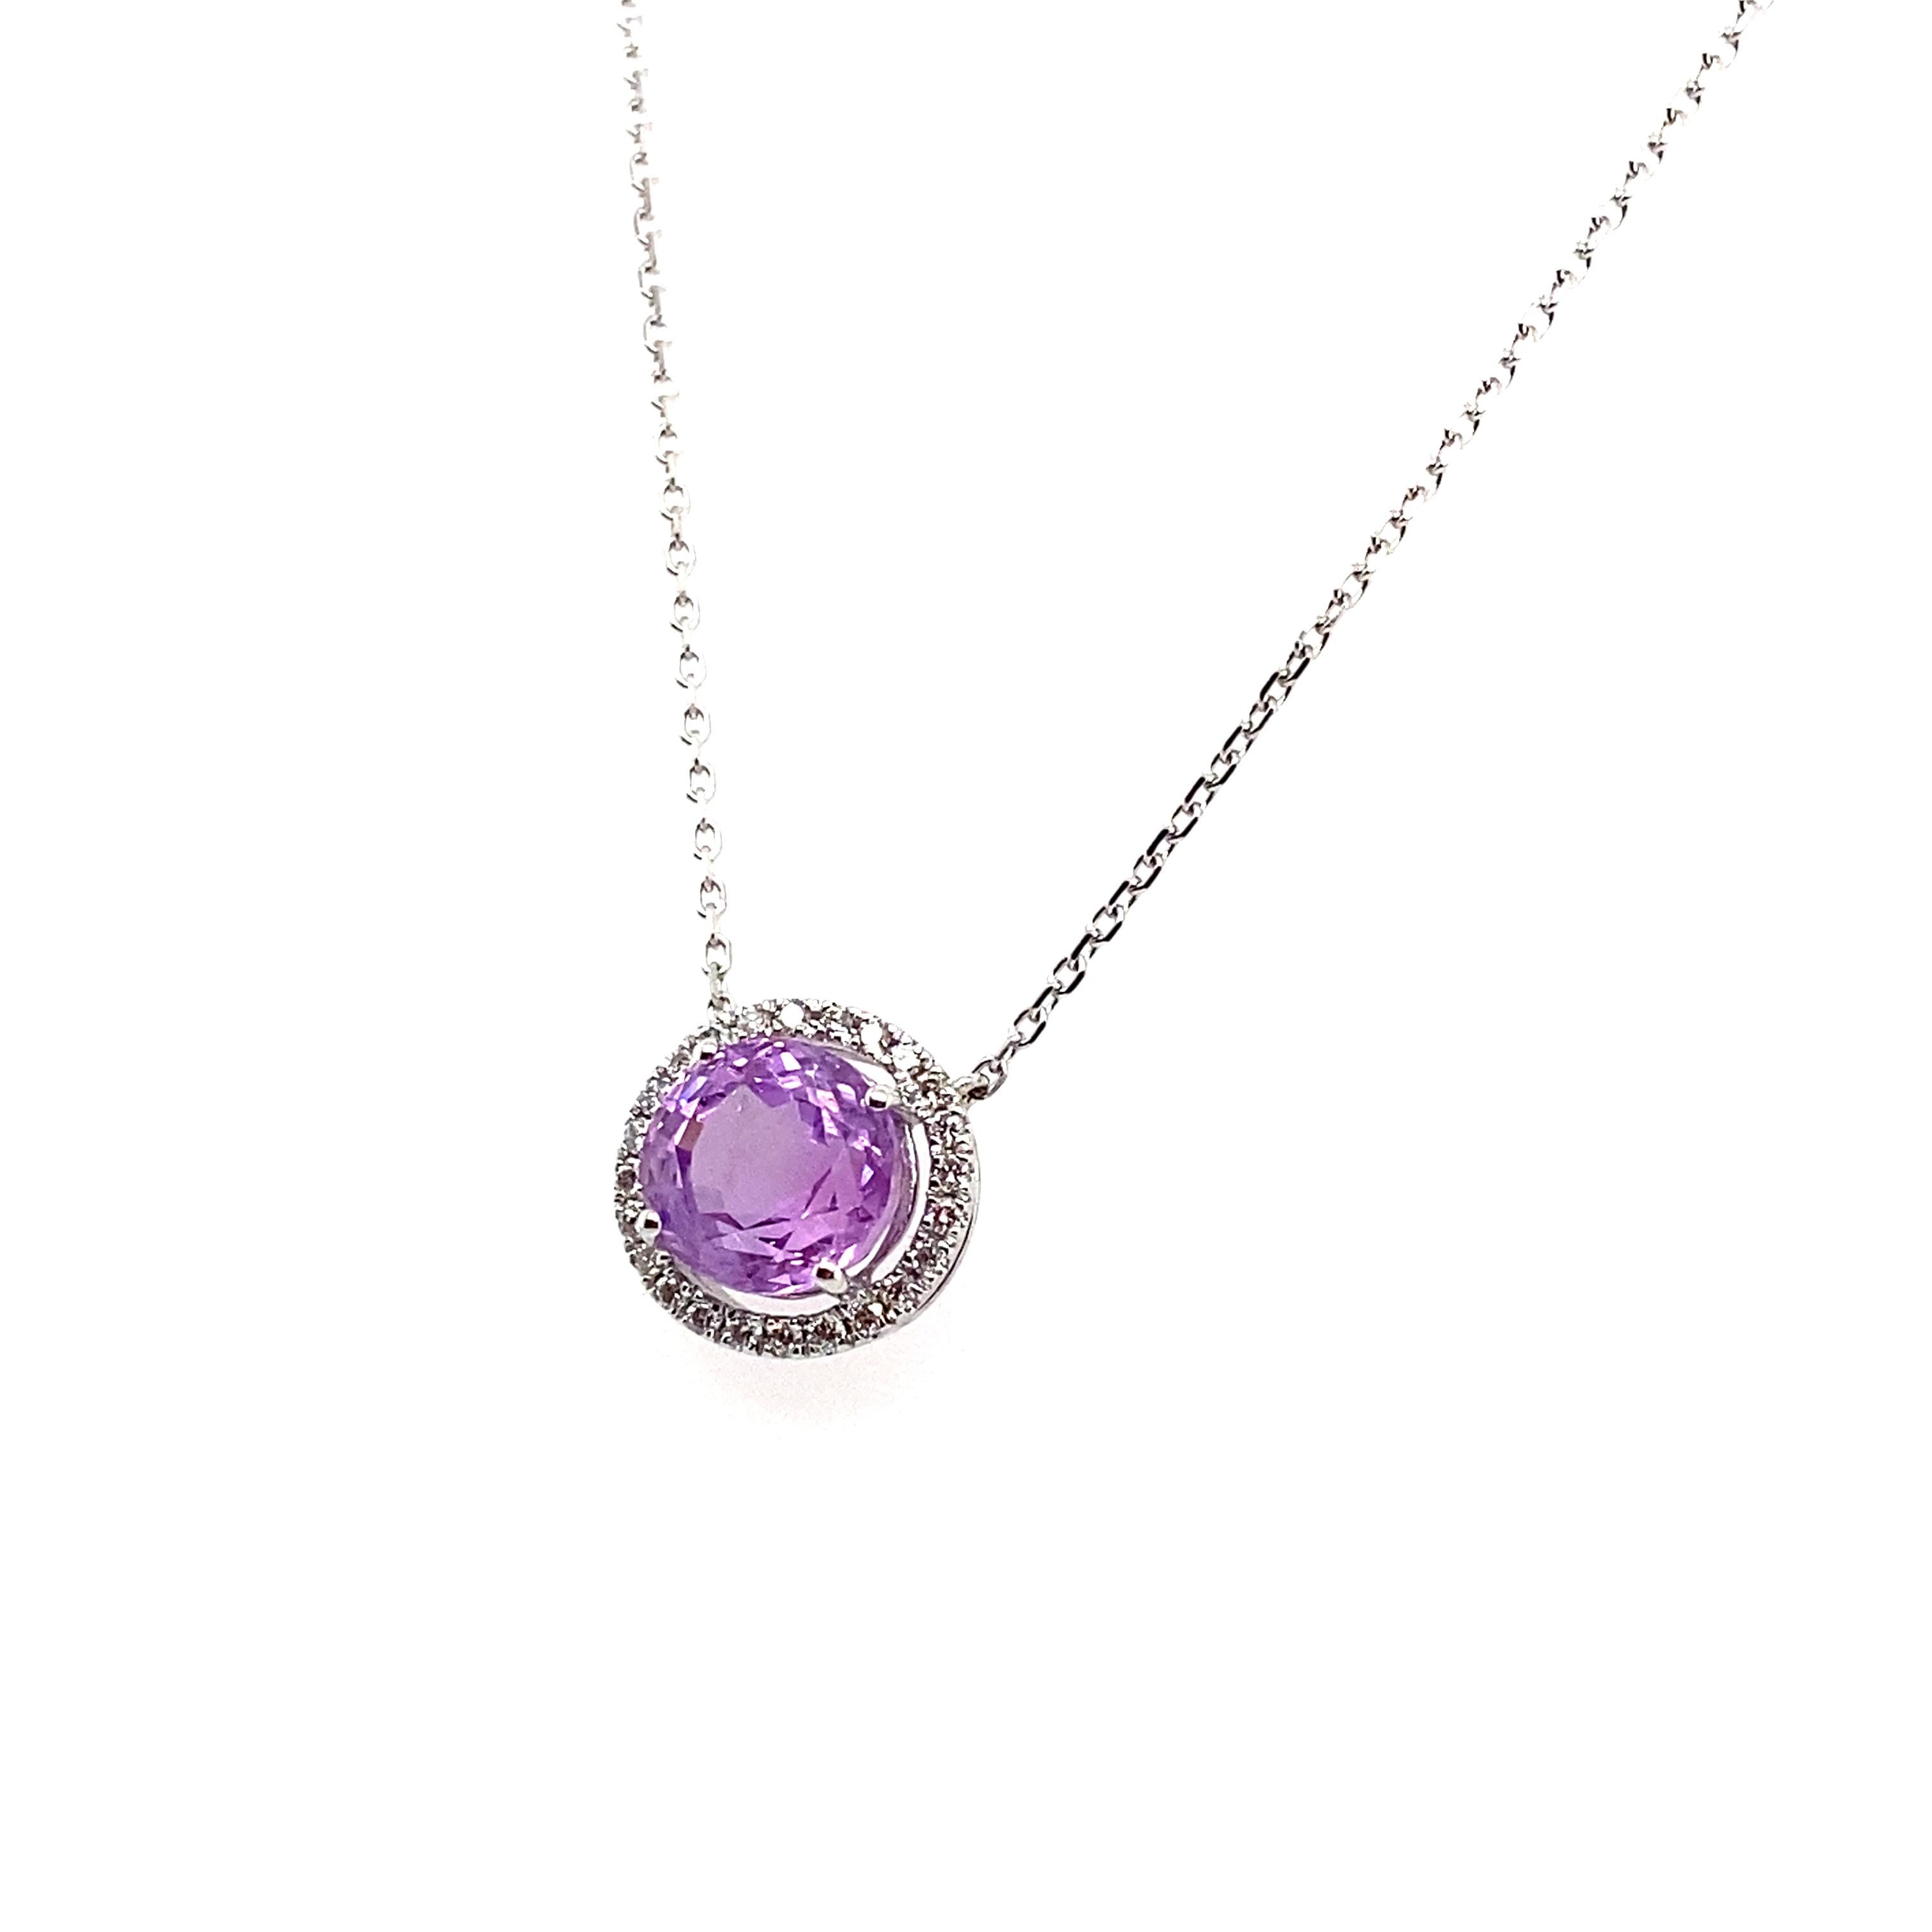 Oval Cut 3.07Carat No Heat Purple Sapphire and Diamond Pendant Necklace For Sale